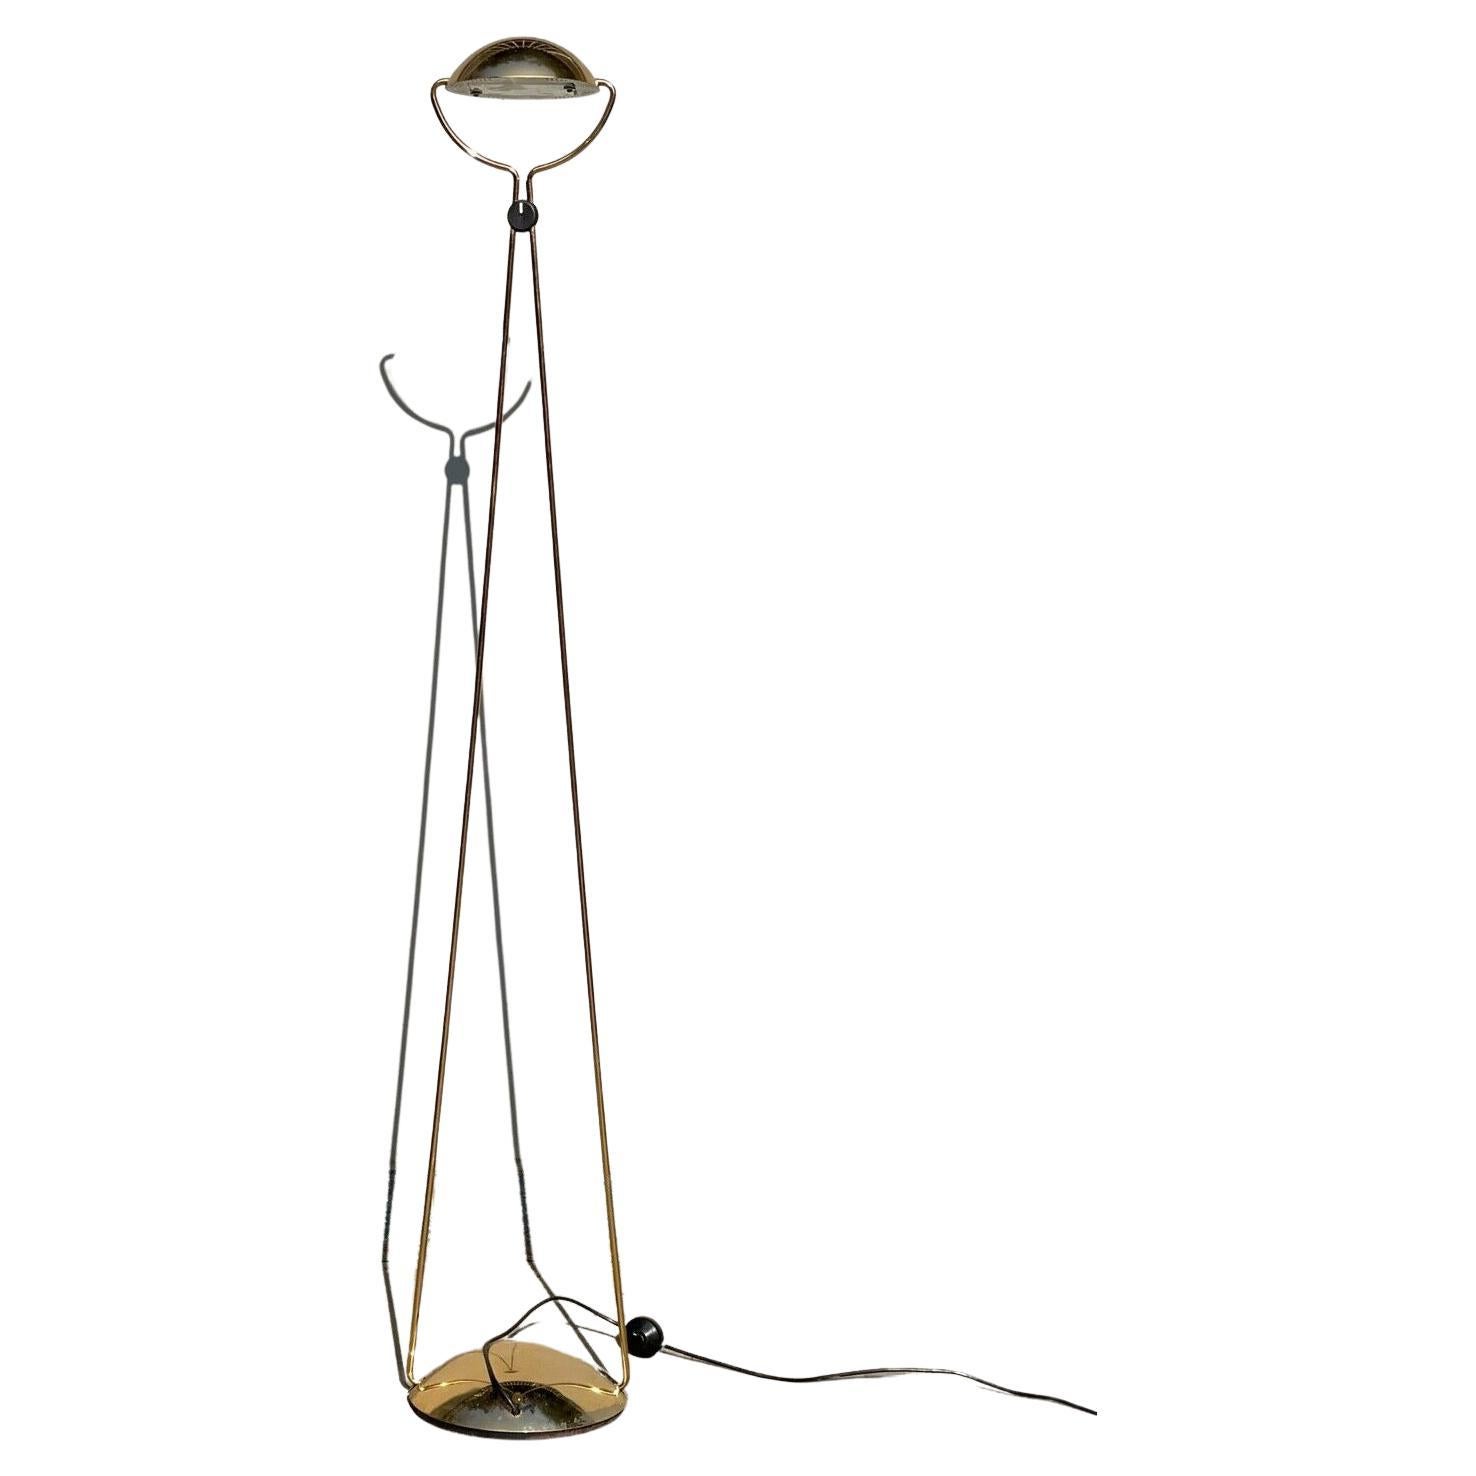 Lampada Da Terra Design Modello Meridiana Disegnata Da Stefano Cevoli